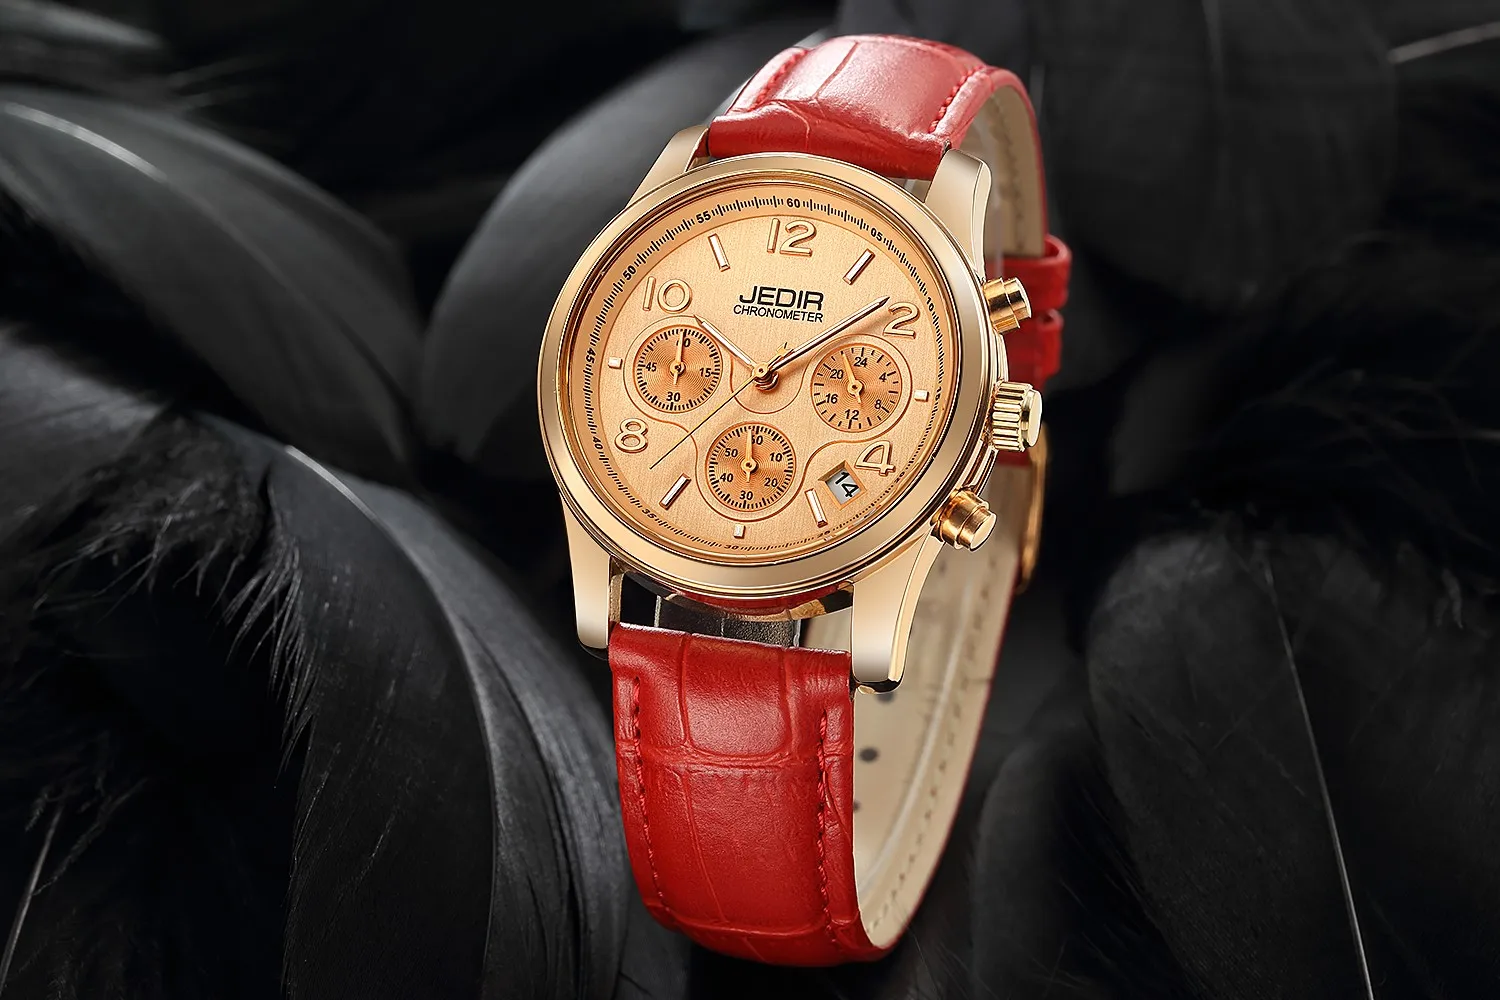 2019 Элитный бренд женские часы хронограф модные пояса из натуральной кожи наручные кварцевые девушка часы для женщин любителей платье часы